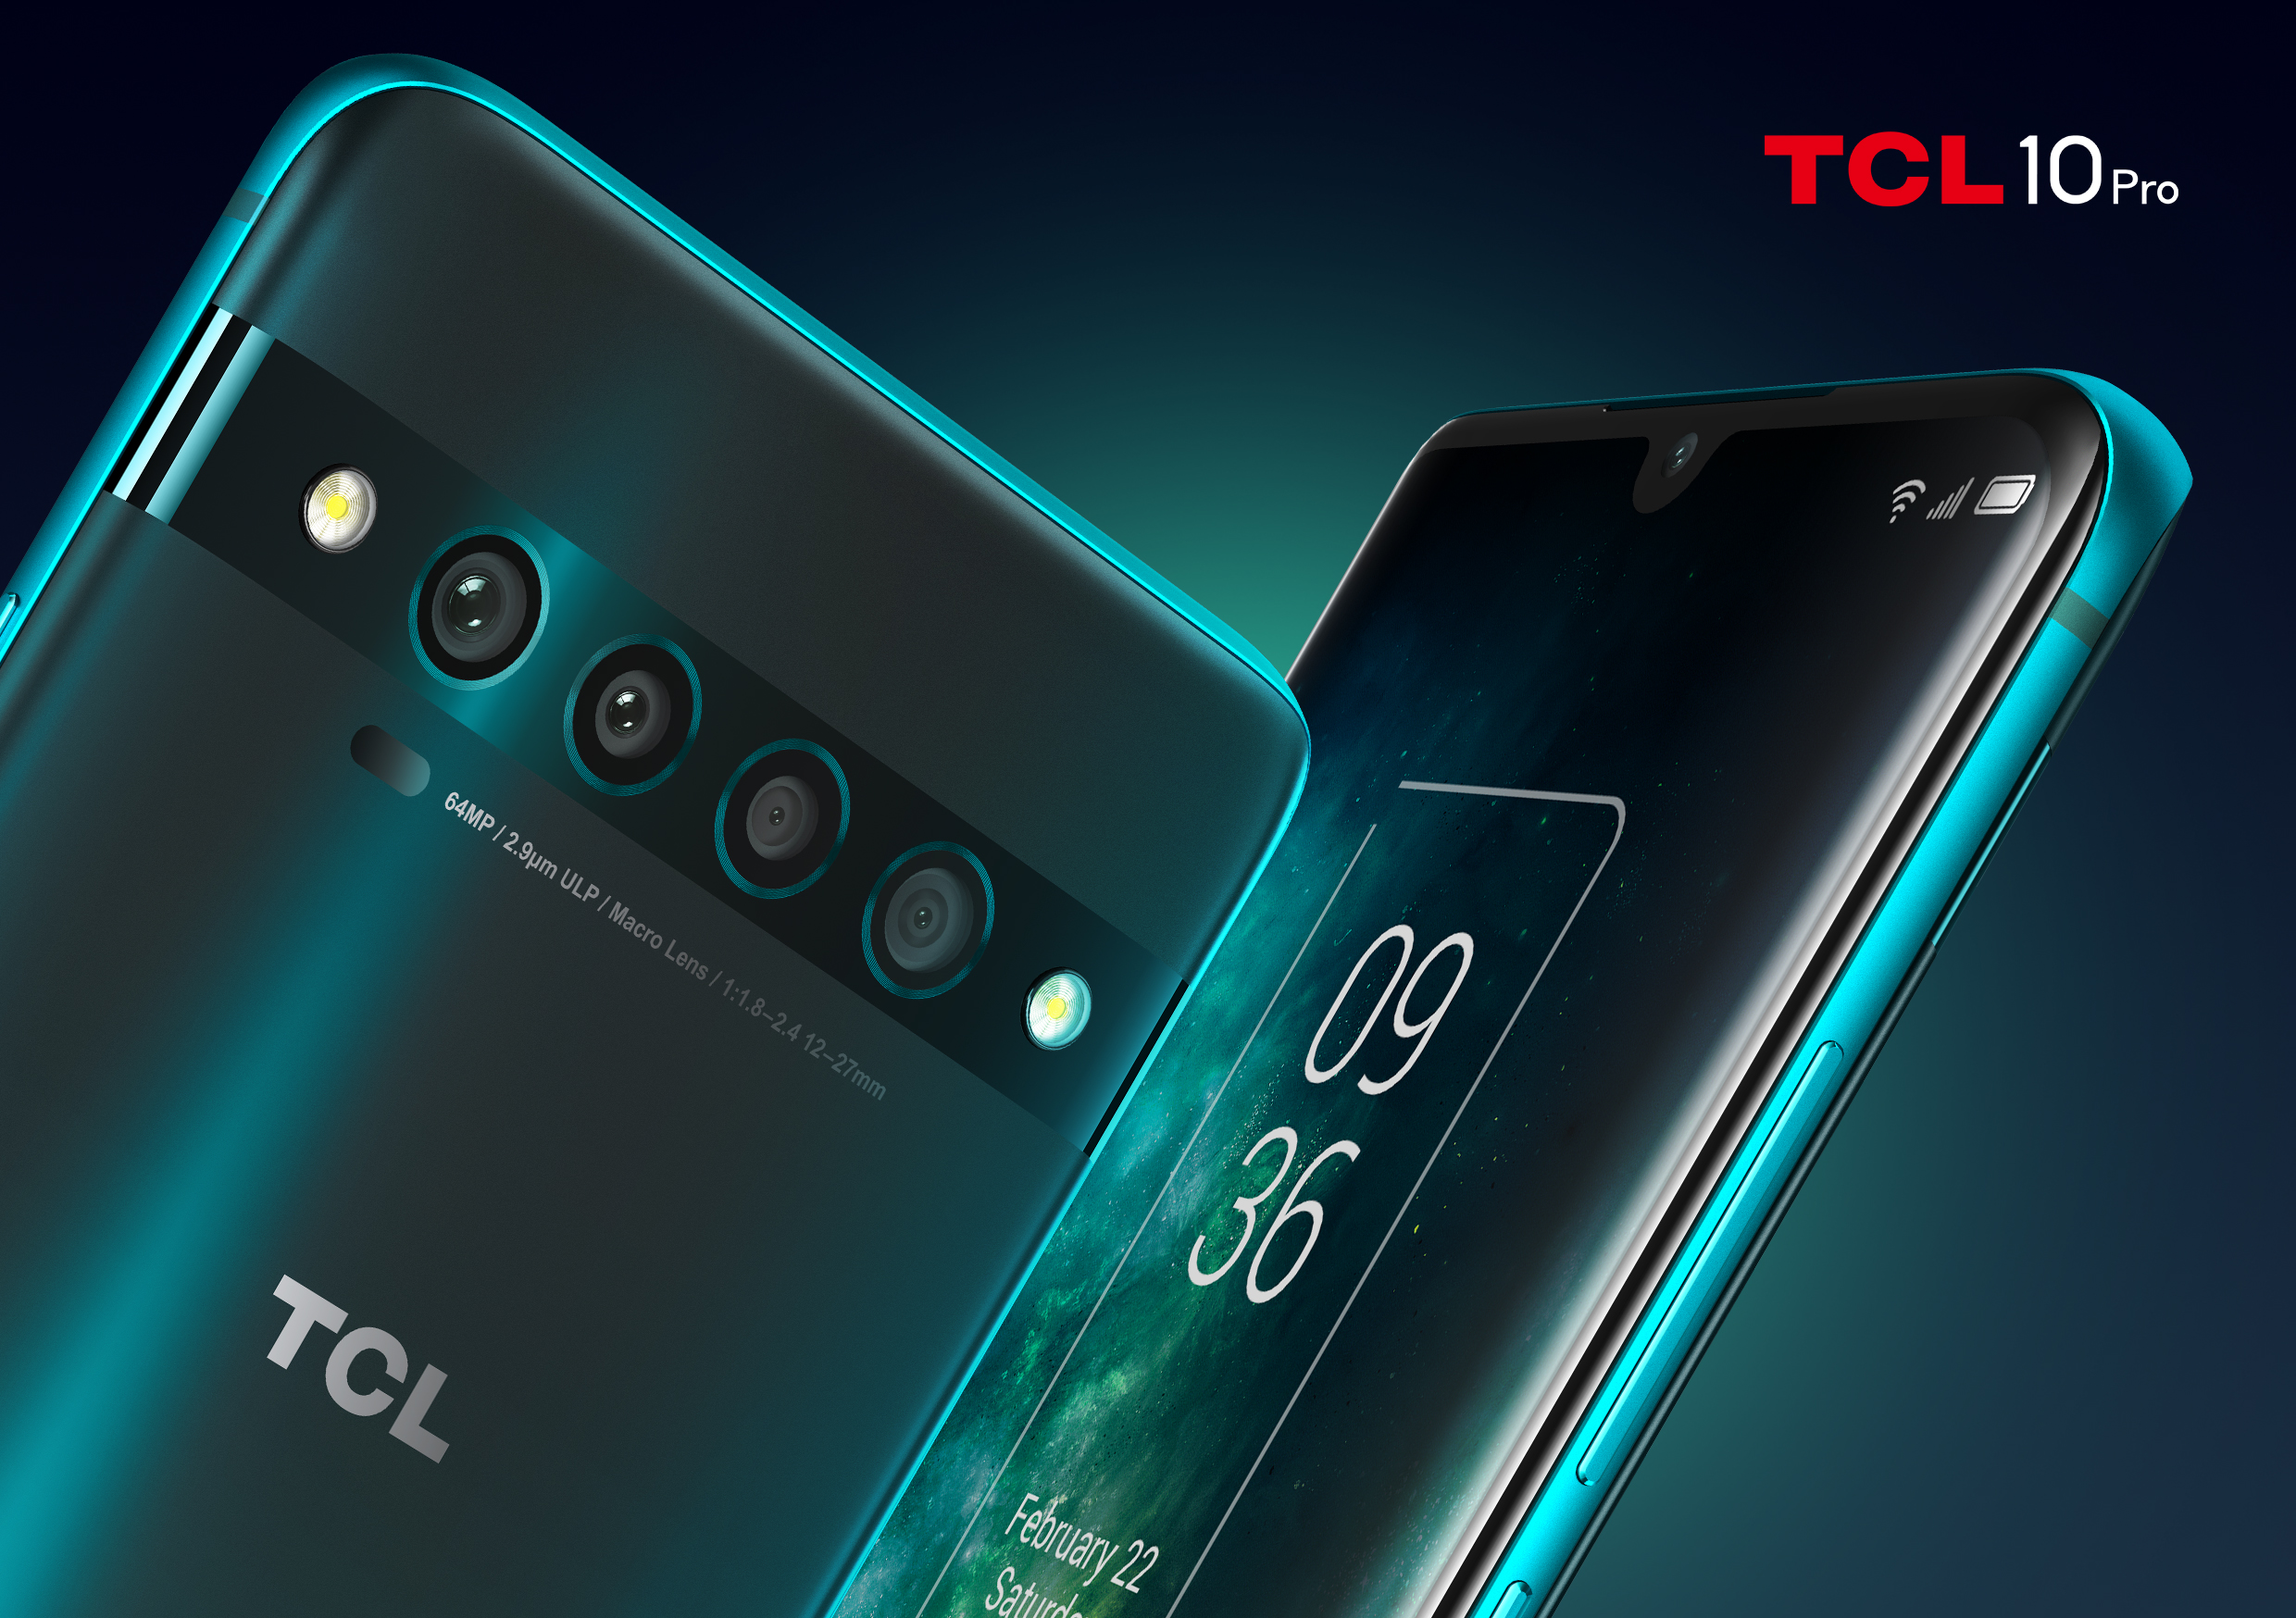 TCL presenta el smartphone TCL 10 PRO con pantalla curva amoled